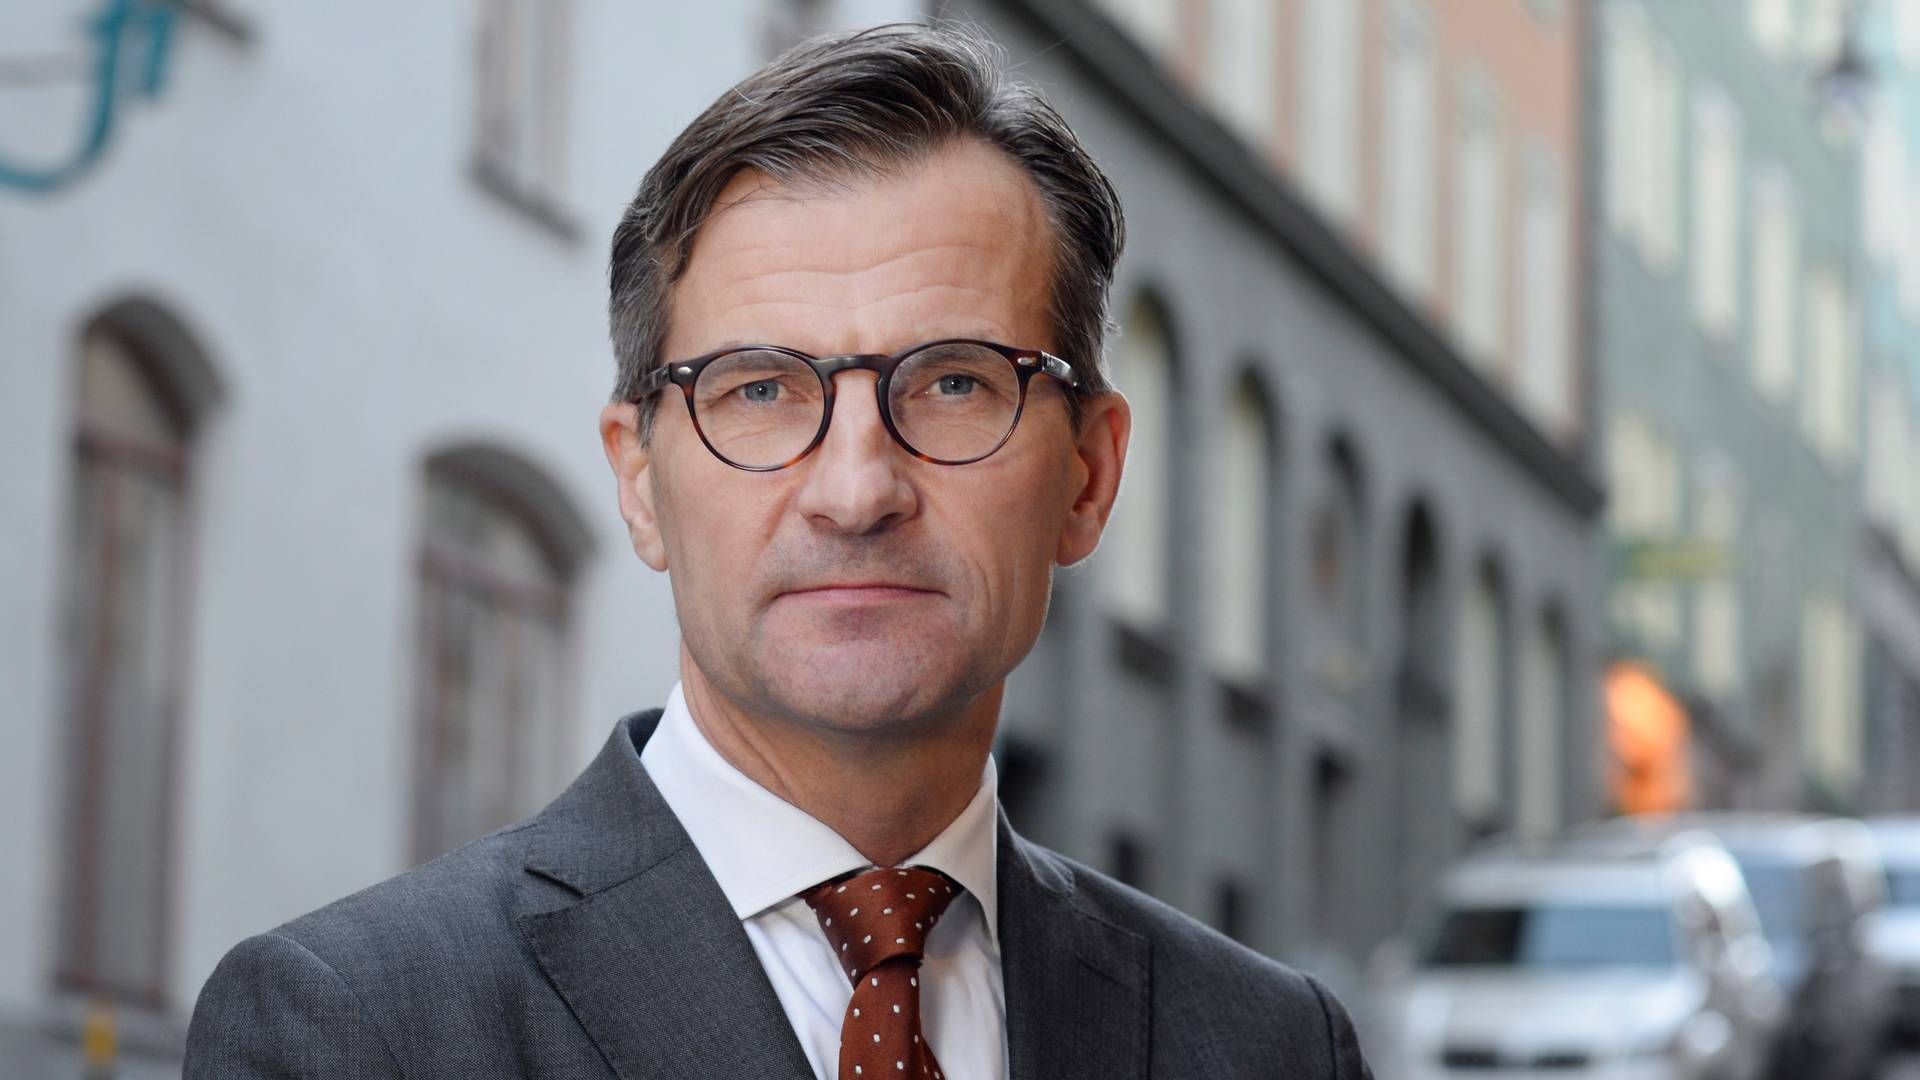 Erik Thedéen er Sveriges nationalbankdirektør. | Foto: Pr/finansinspektionen